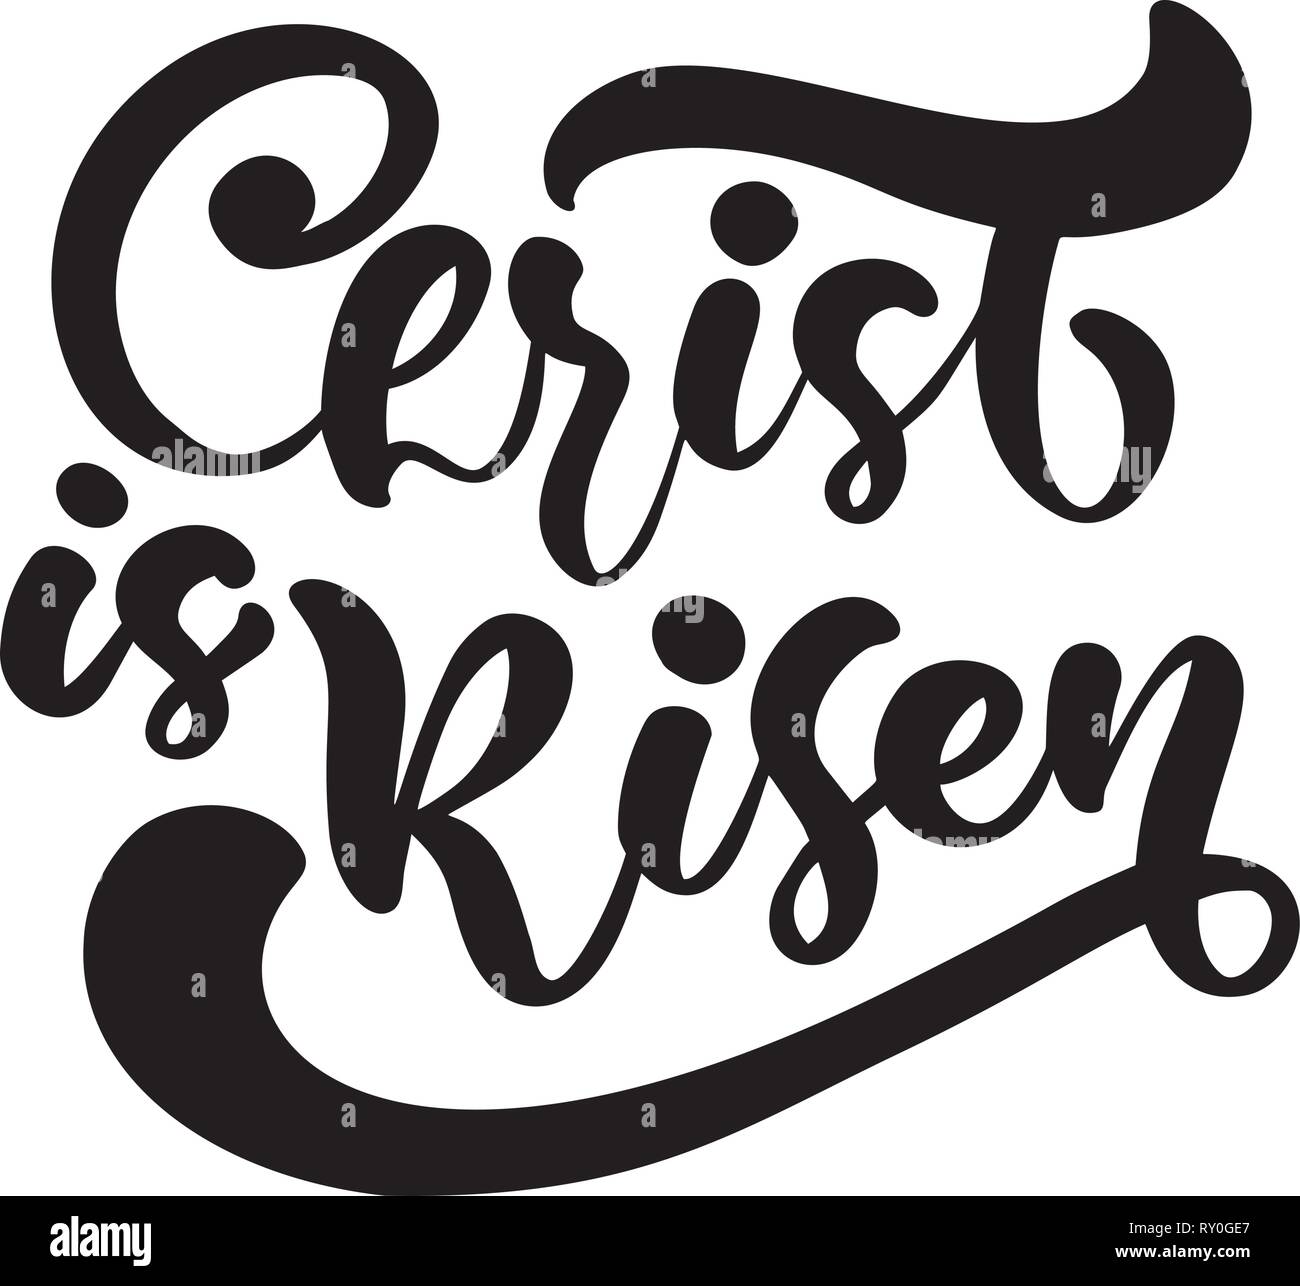 Disegnata a mano felice Pasqua spazzola moderno calligraphy lettering testo Cristo è risorto. La Bibbia di inchiostro illustrazione vettoriale. Isolato su sfondo bianco Illustrazione Vettoriale